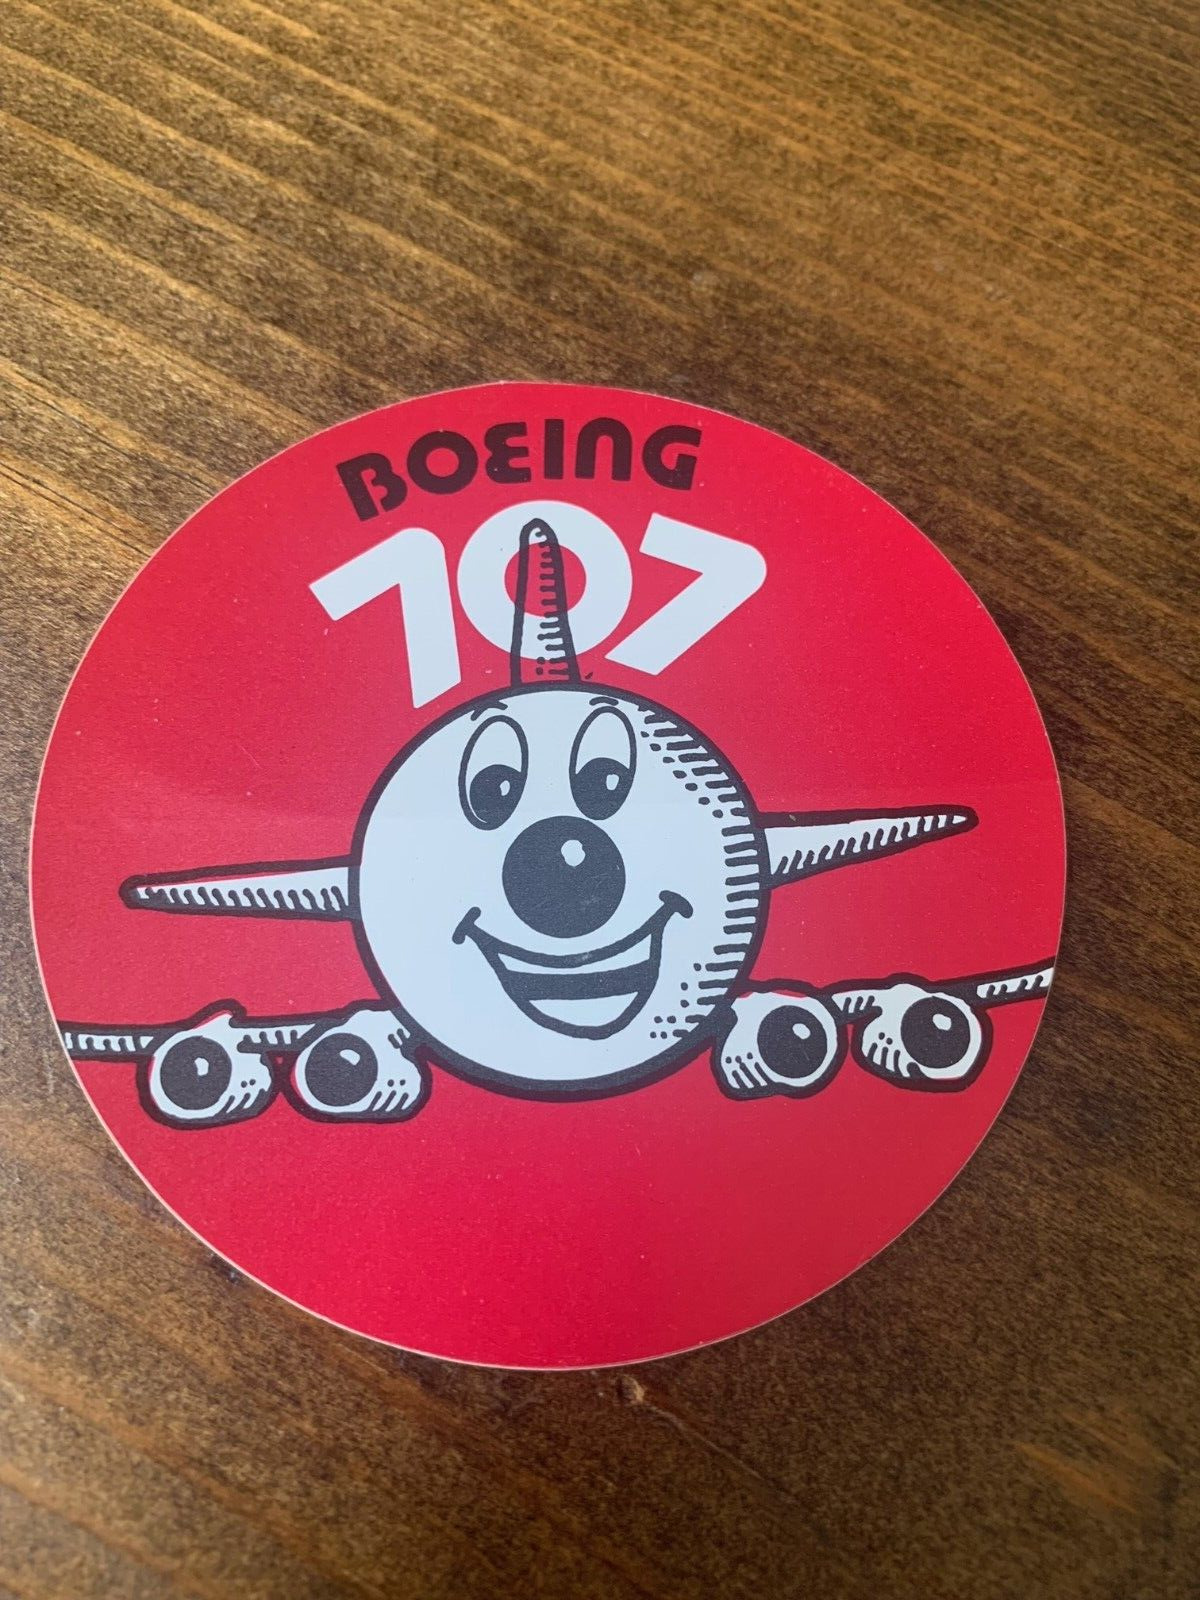 Vintage BOEING 707 Airplane Sticker Decal 